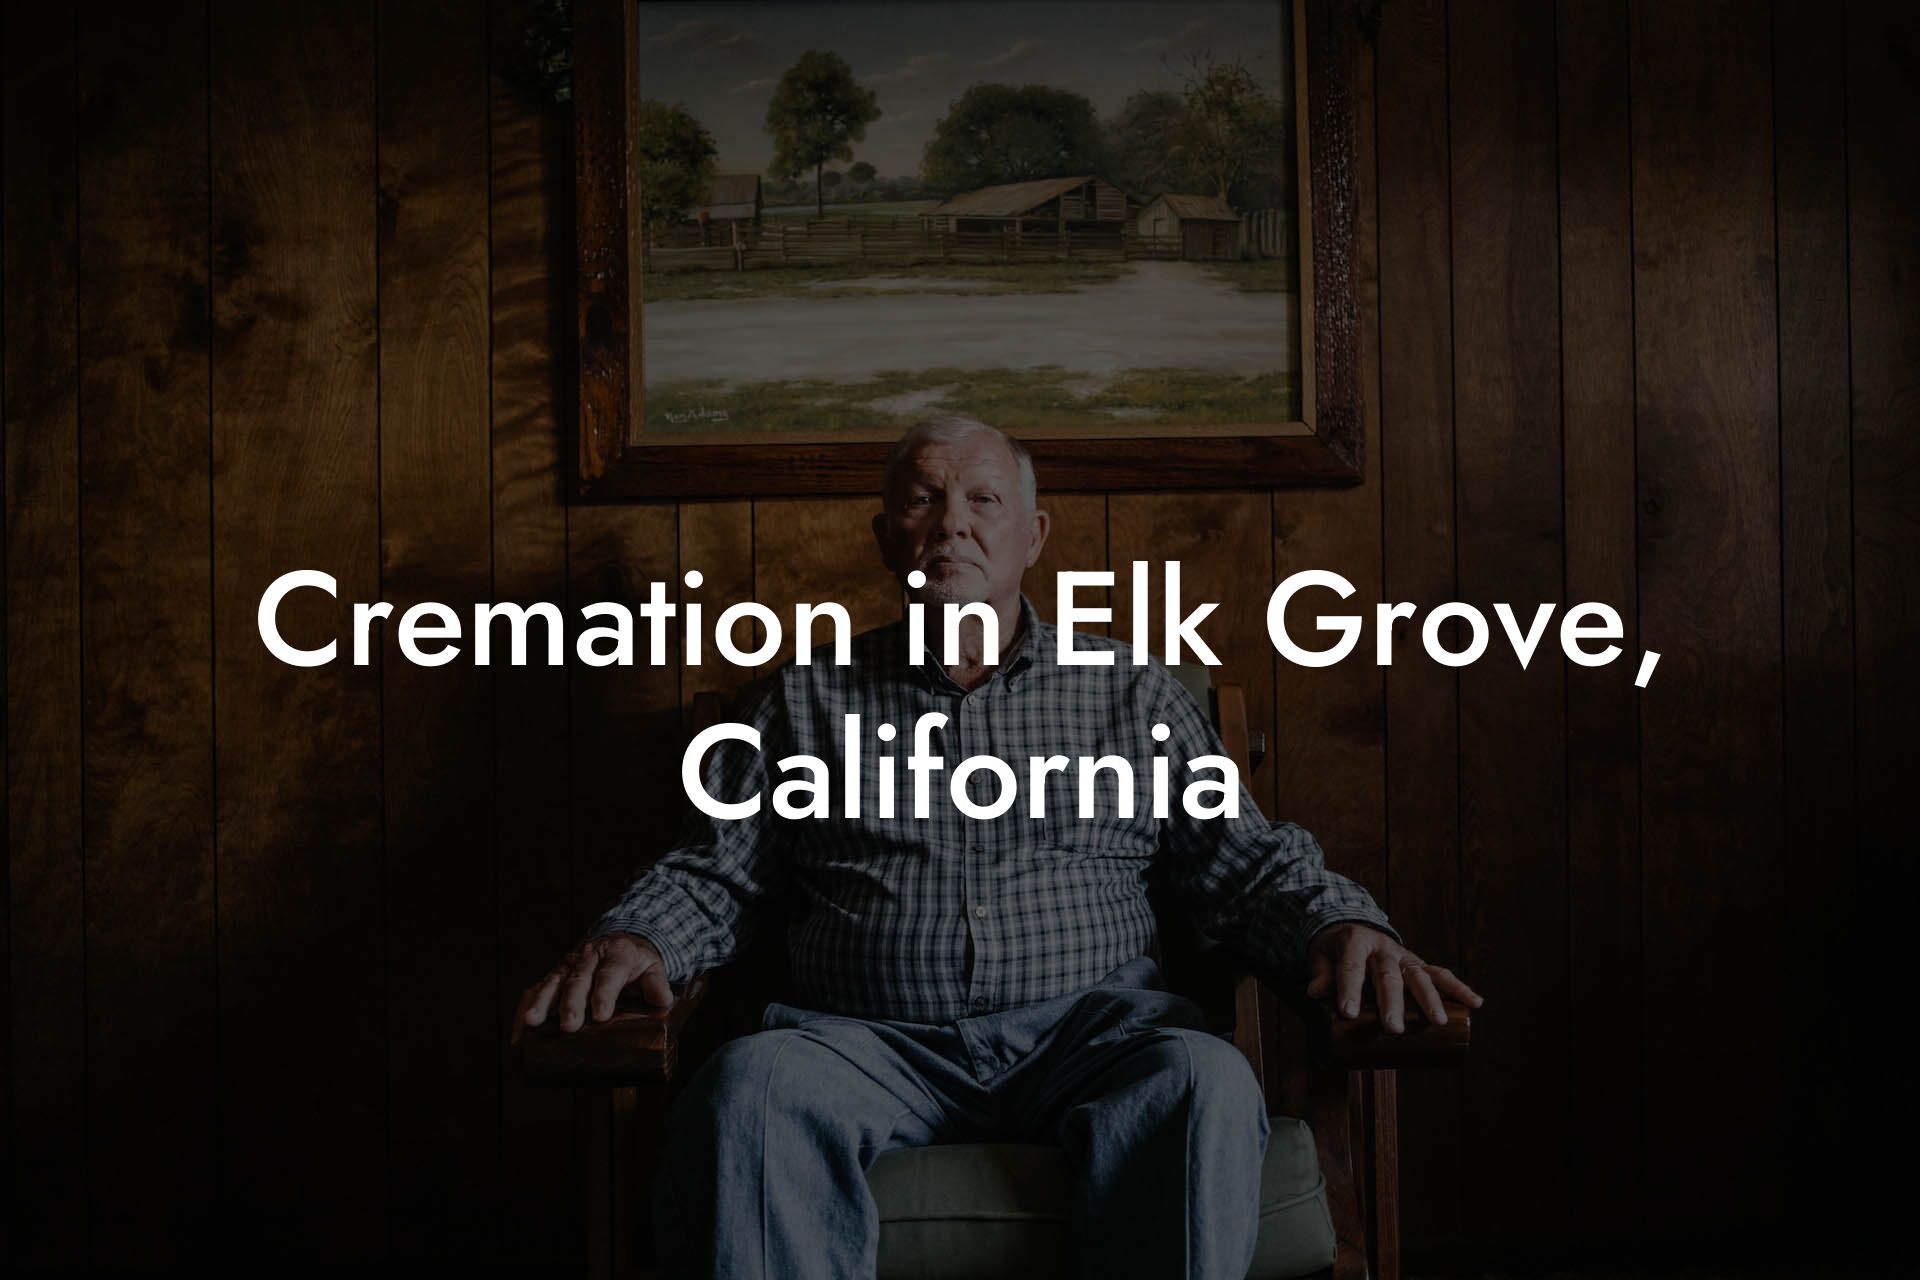 Cremation in Elk Grove, California